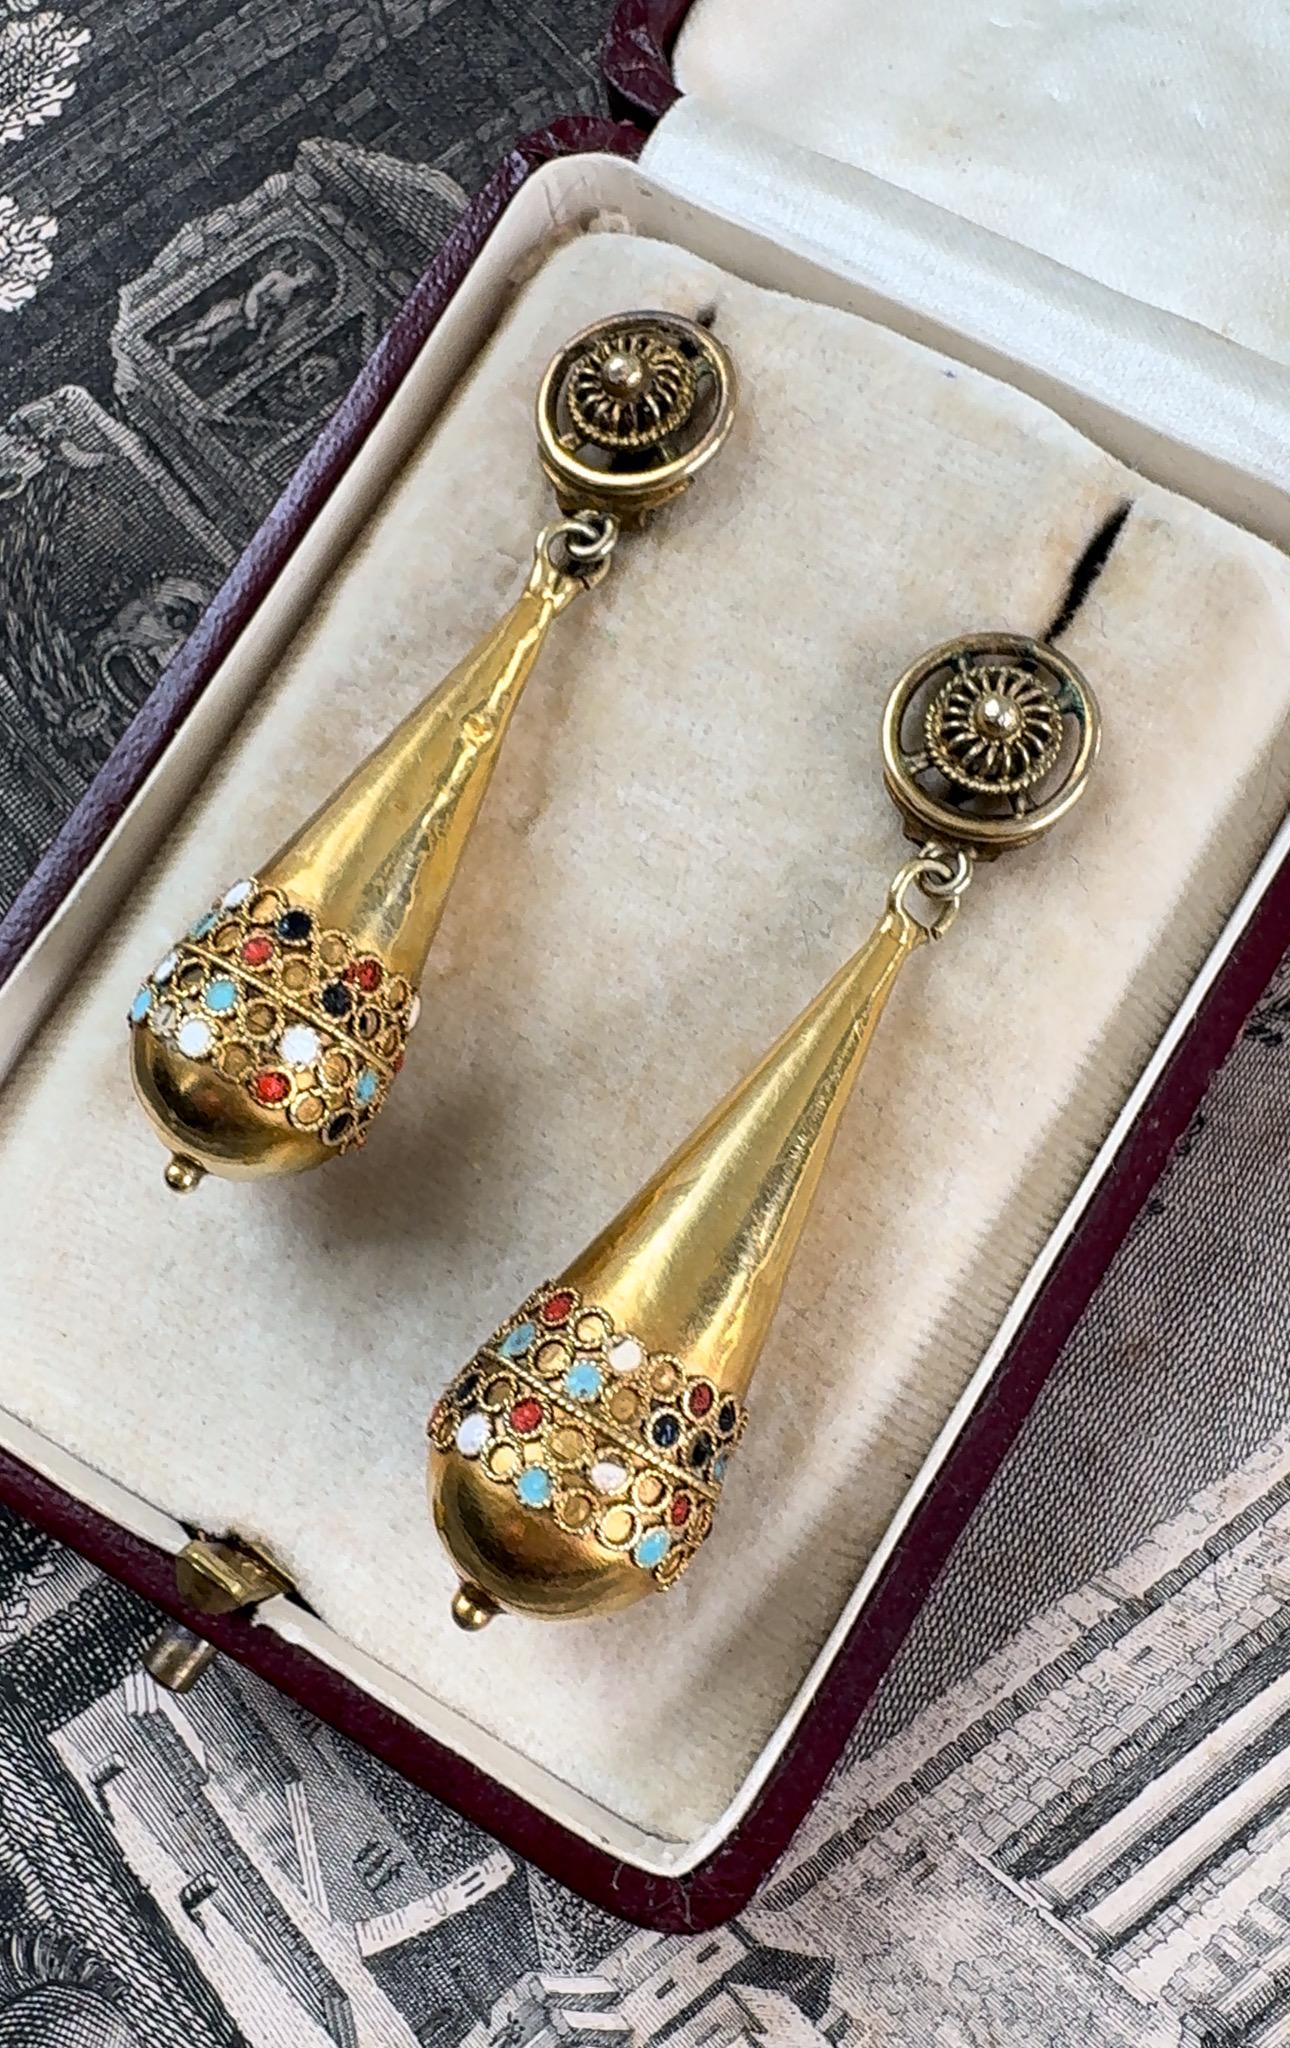 Women's 14K Etruscan Revival Torpedo Drop Earrings with Enamel Details - 1880 For Sale